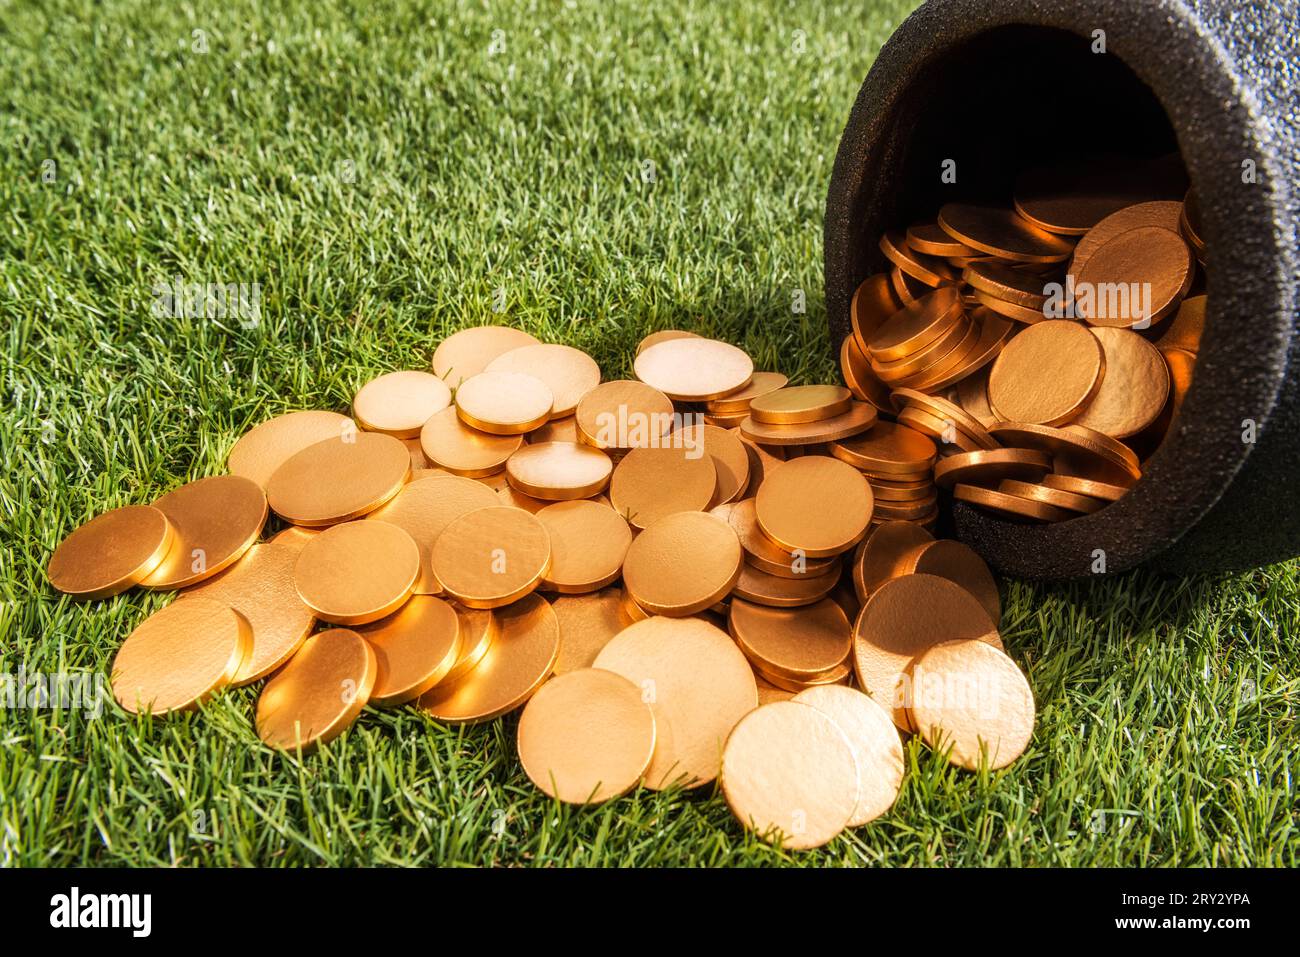 Guardando in basso un bollitore in ferro battuto nero che è stato rovesciato versando le sue monete d'oro sull'erba. Foto Stock